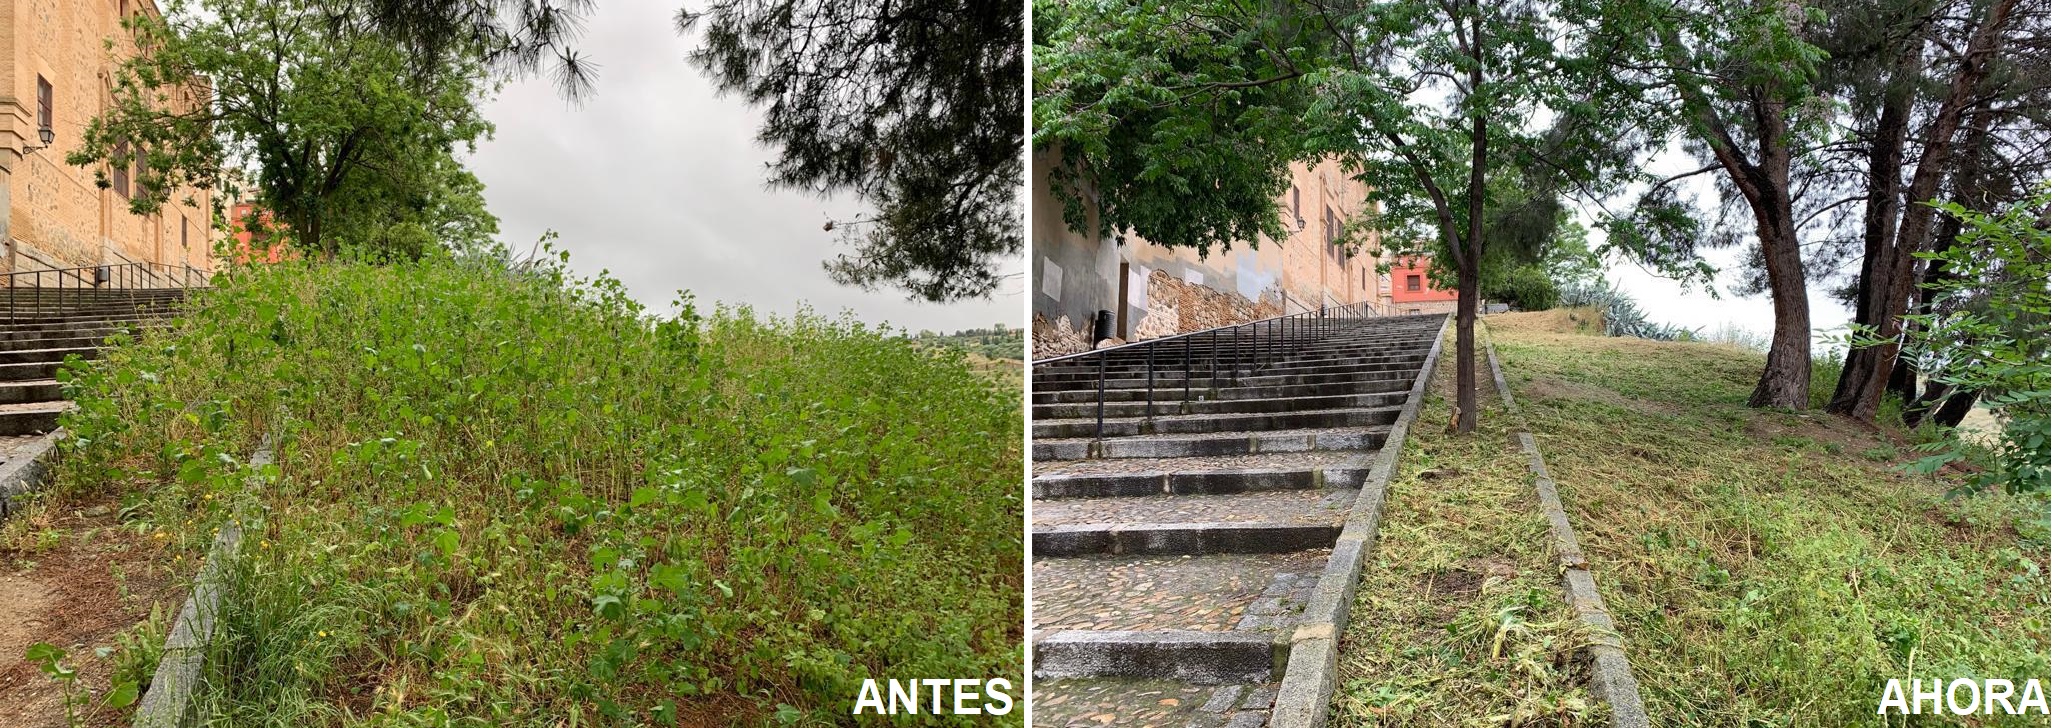 Bajada de Santa Ana, en el casco histórico de Toledo, junto al río Tajo. El antes y el después.